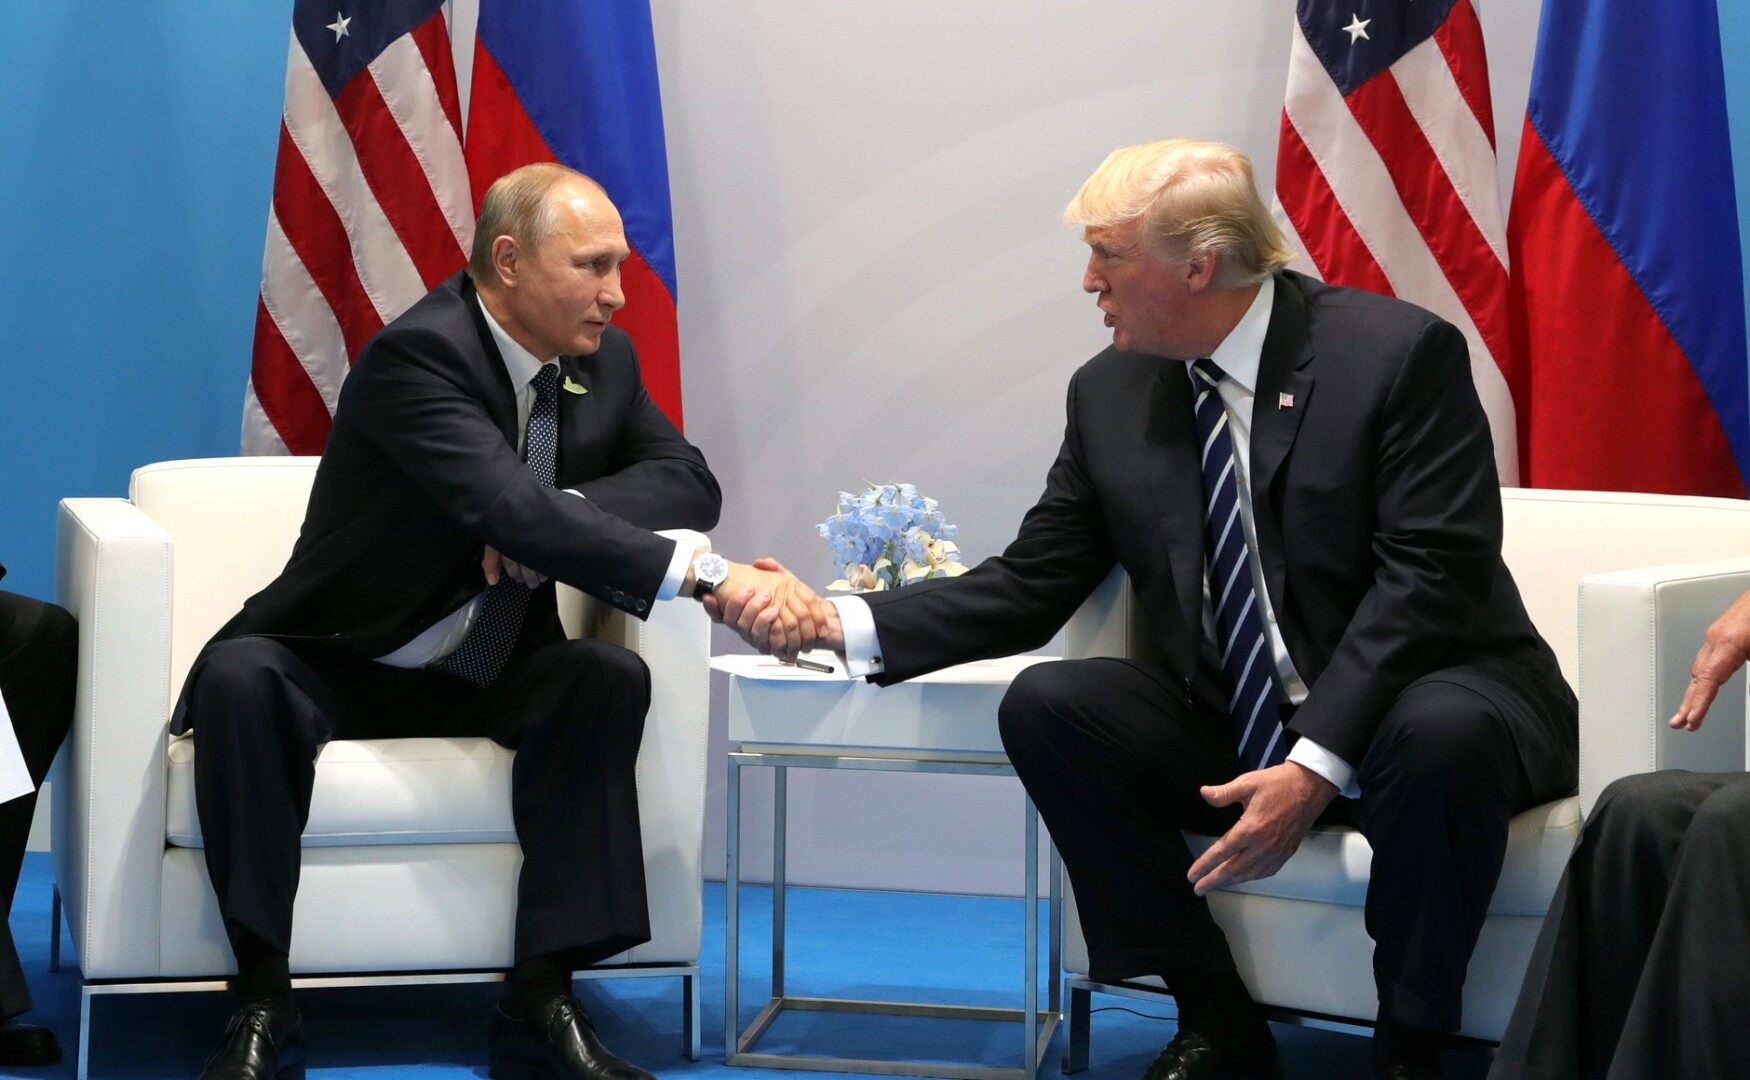 // Putin und Trump / Archivbild / Vladimir Putin and Donald Trump at the 2017 G-20 Hamburg Summit (2) by Kremlin.ru is licensed under CC BY 4.0. https://creativecommons.org/licenses/by/4.0/